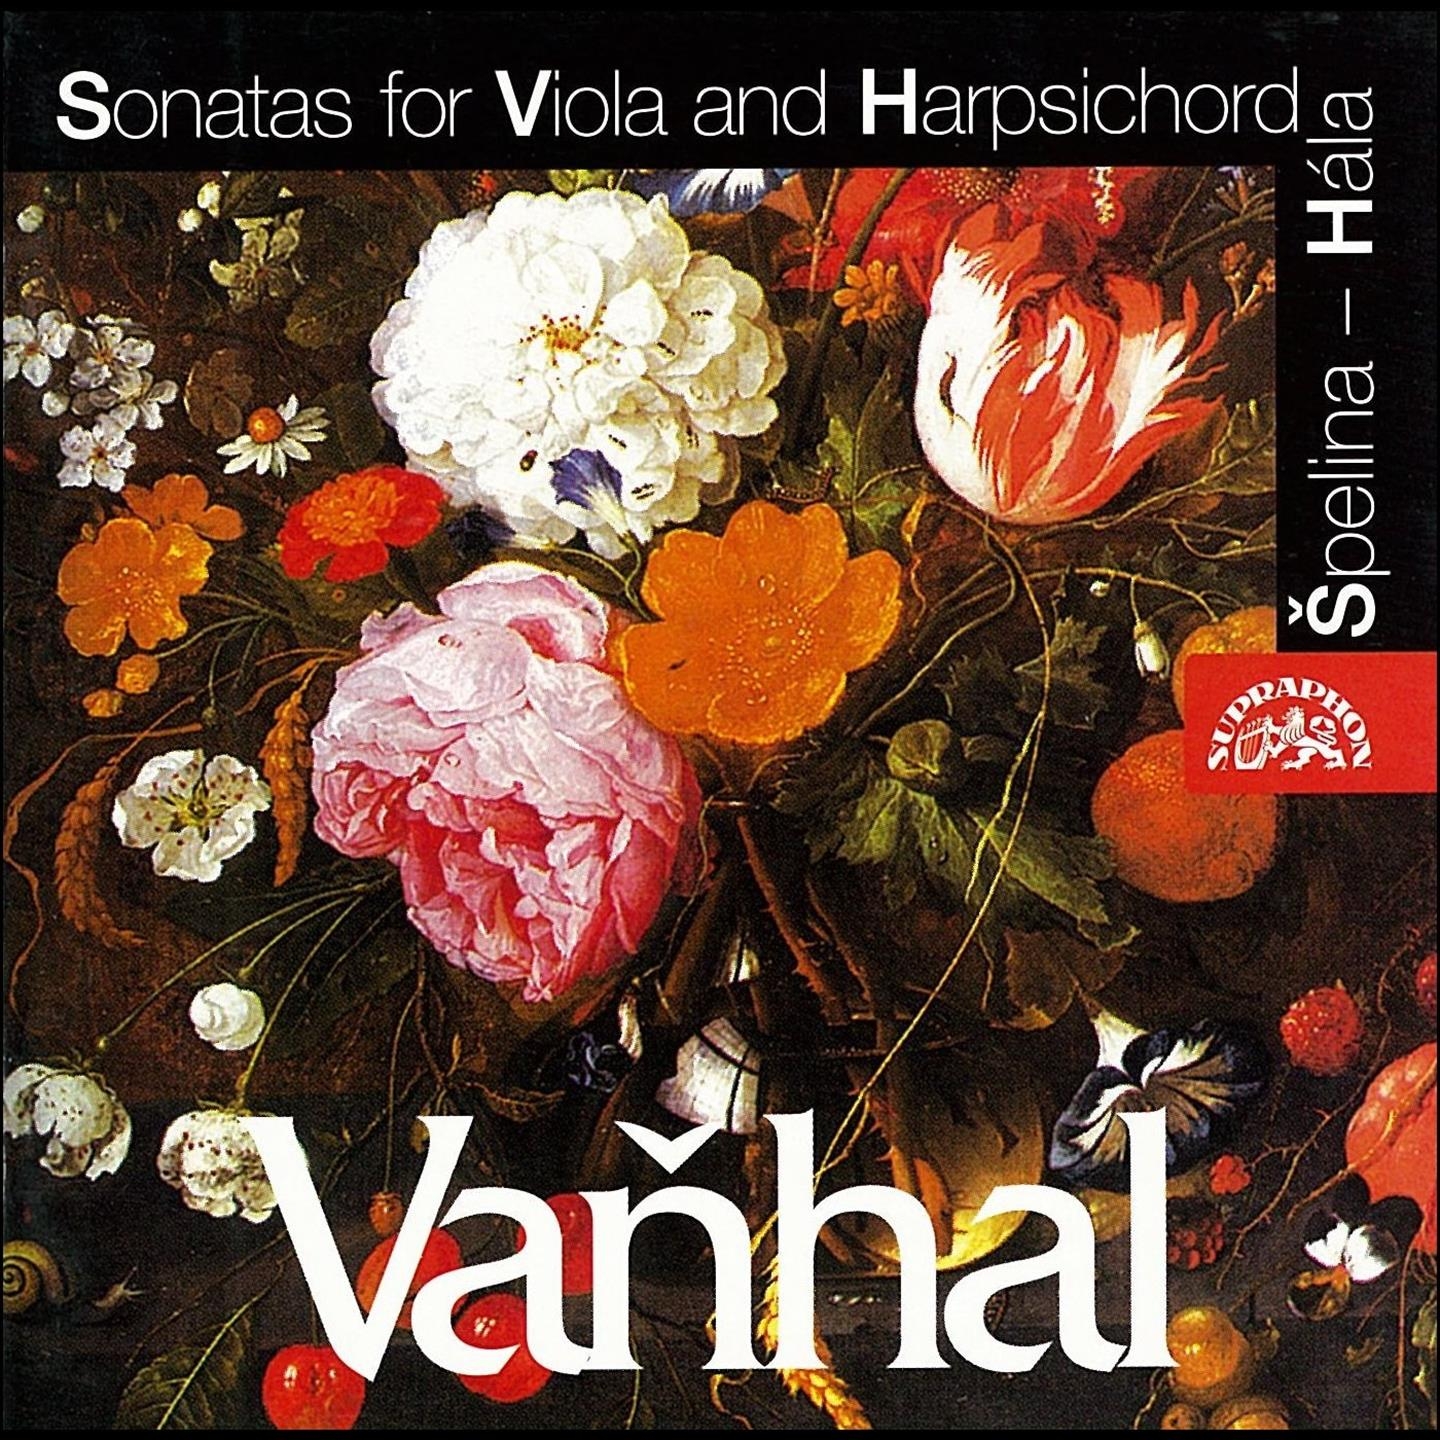 Sonata for Viola and Harpsichord No. 4 in C-Sharp Major, Op. 5, .: I. Allegro moderato